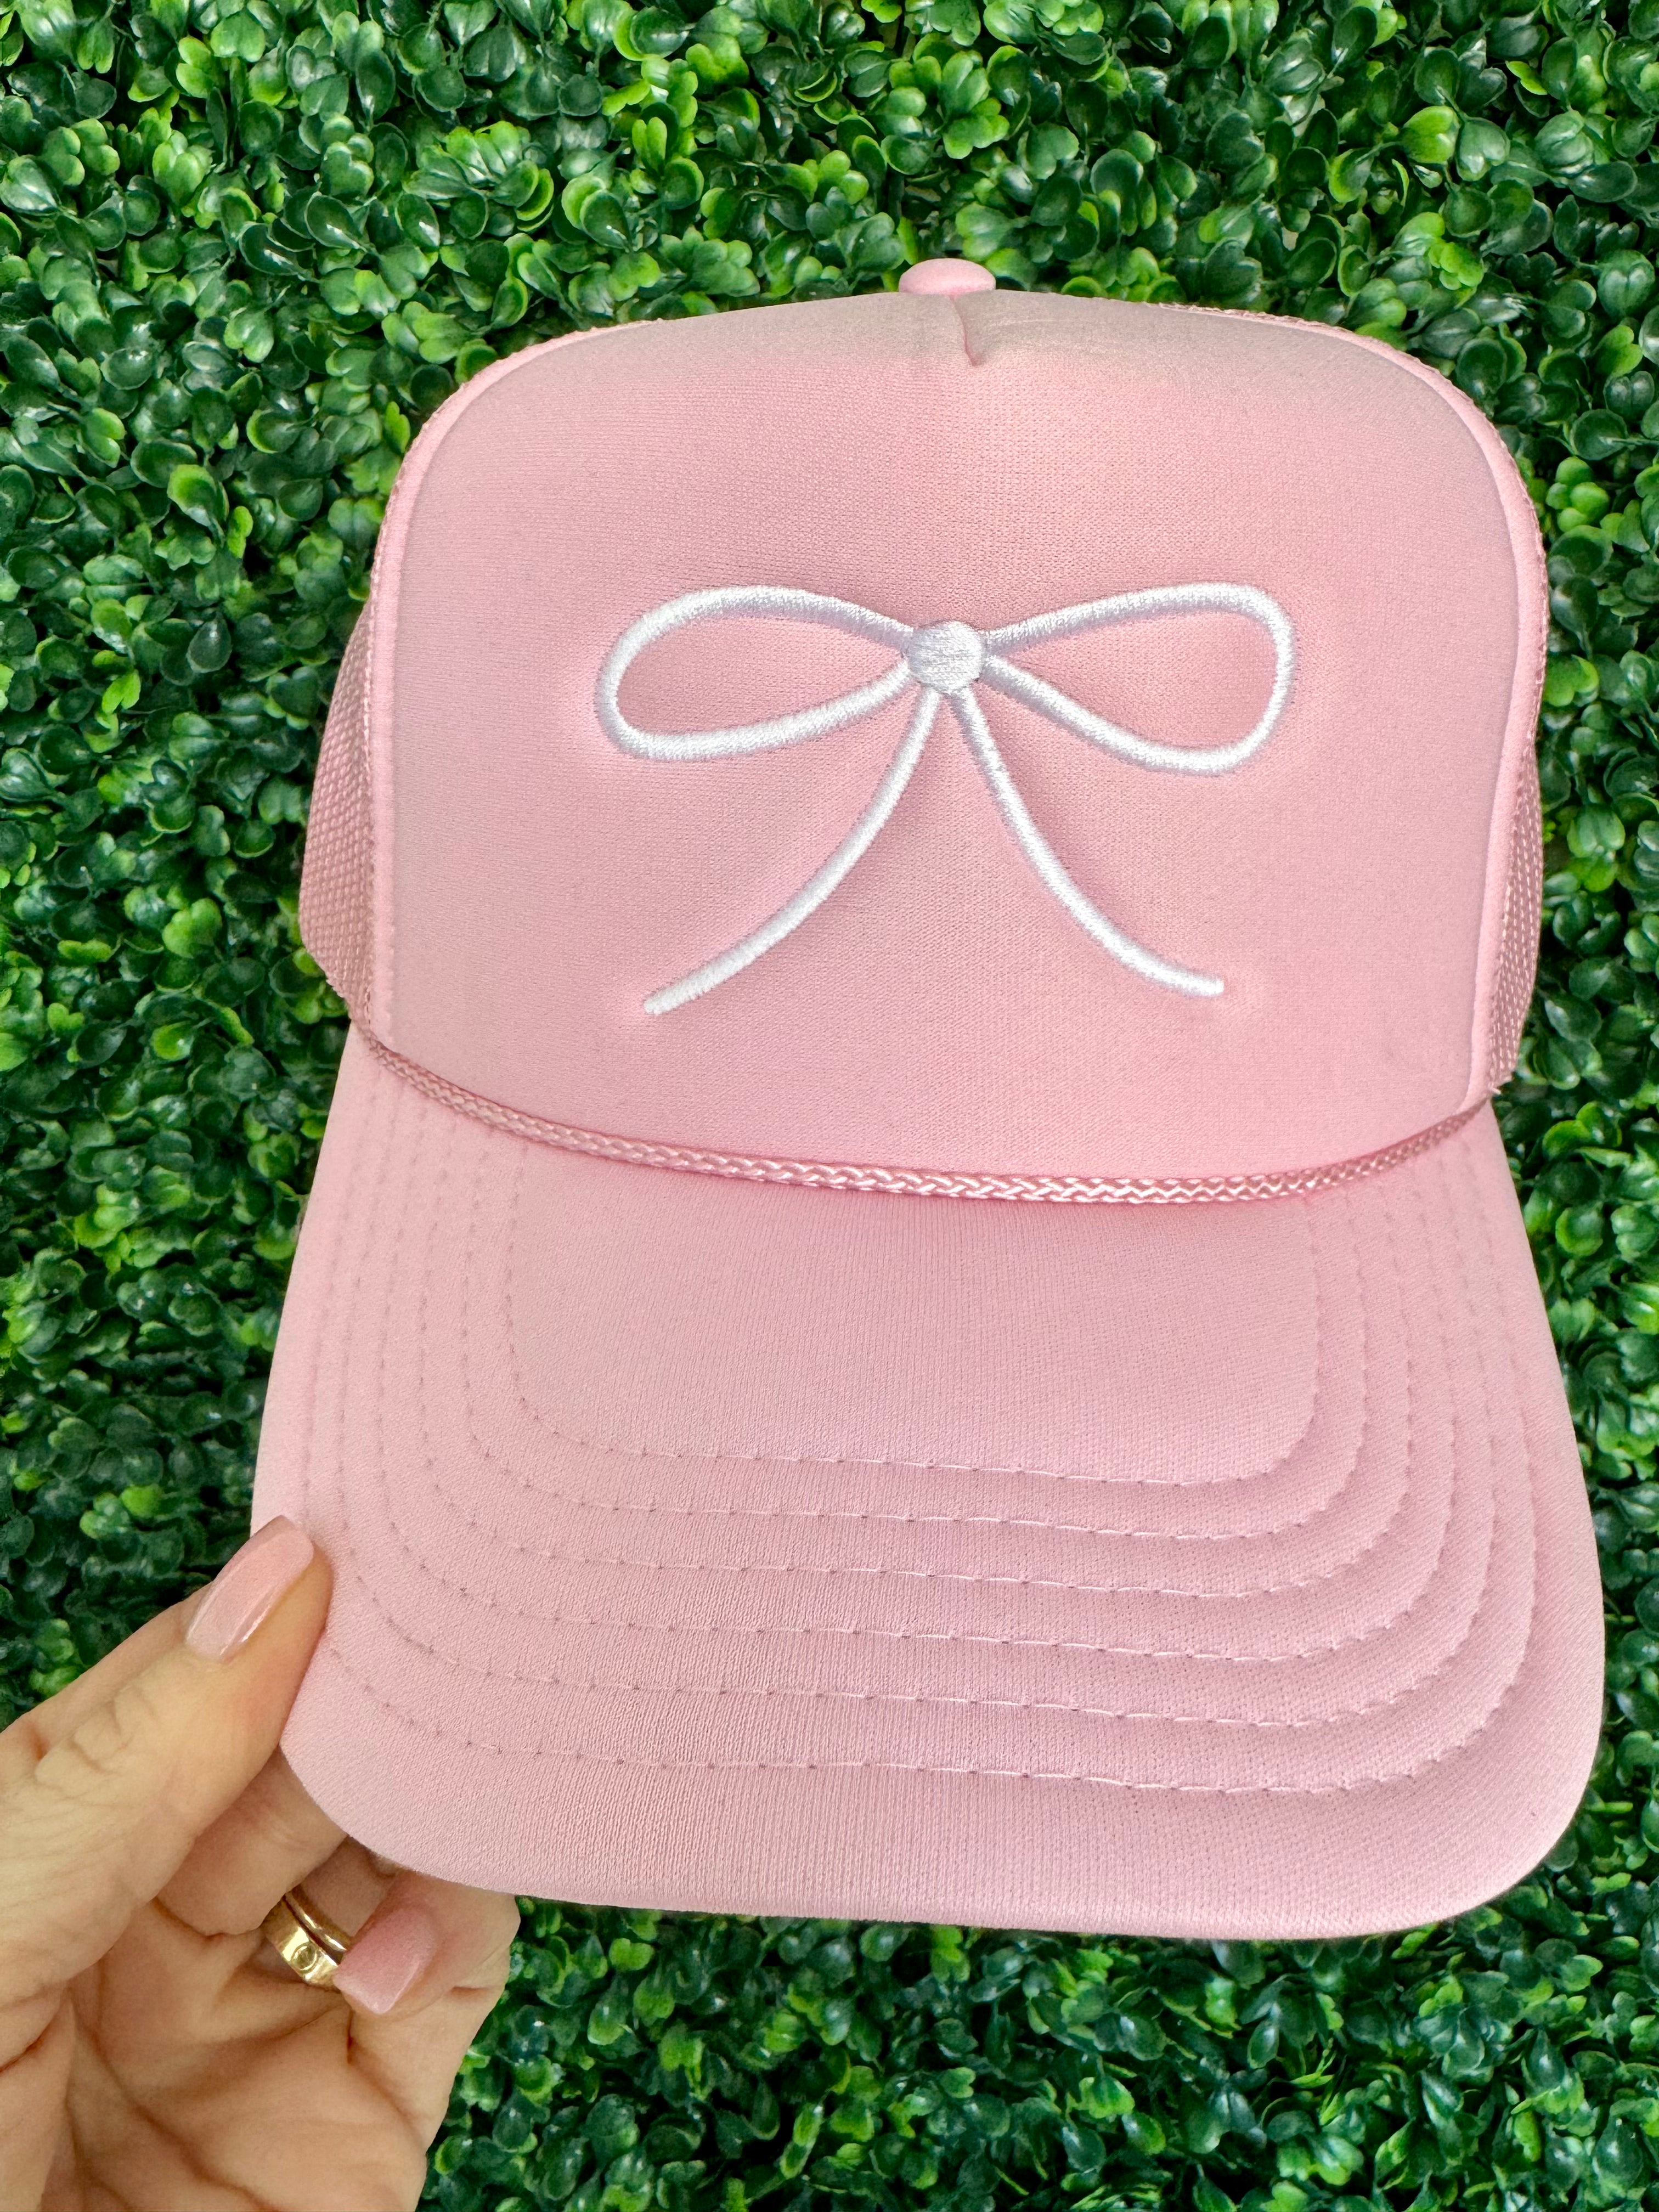 White Bow Pink Trucker Hat